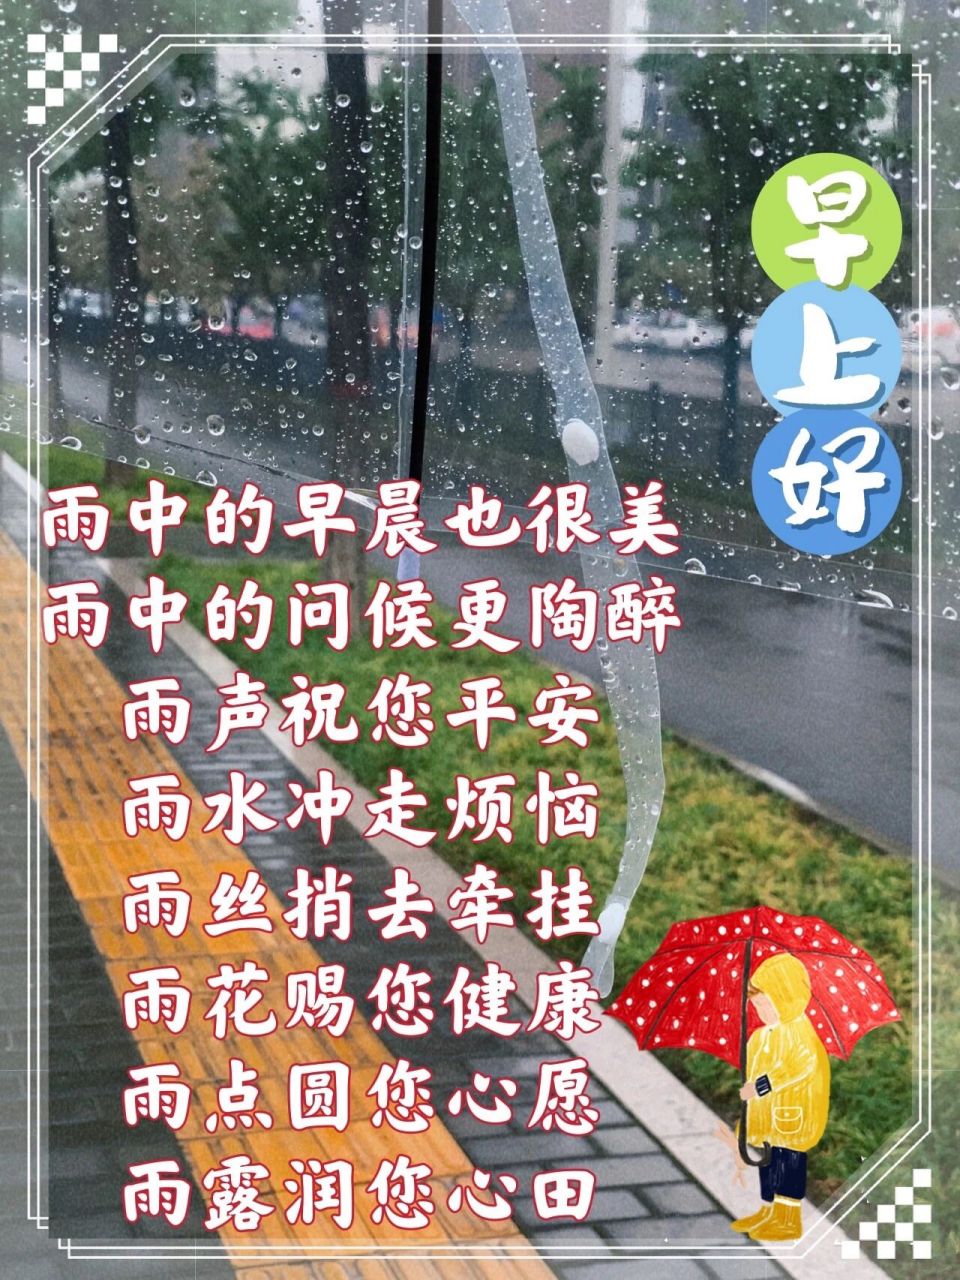 雨天送祝福9393